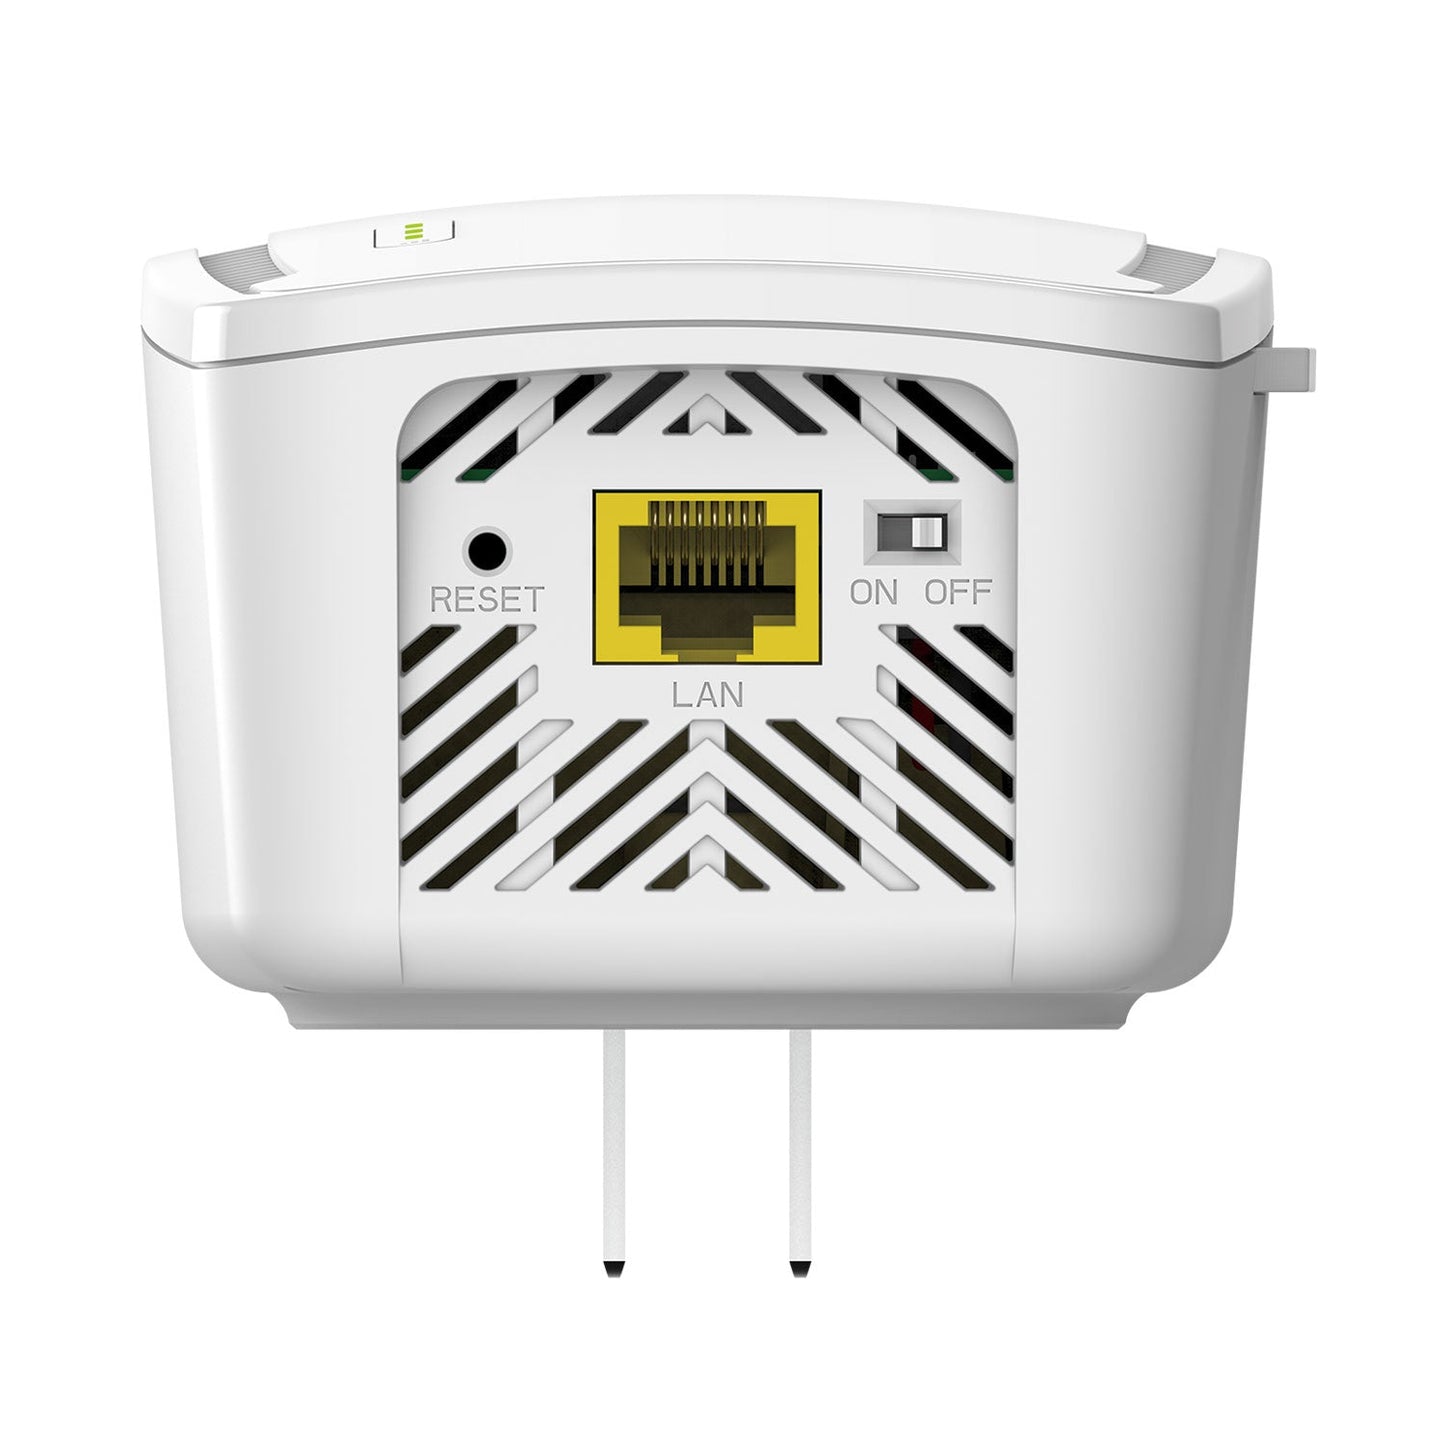 [Certified Refurbished] AC1750 Mesh Wi-Fi Range Extender - DAP-1755/RE